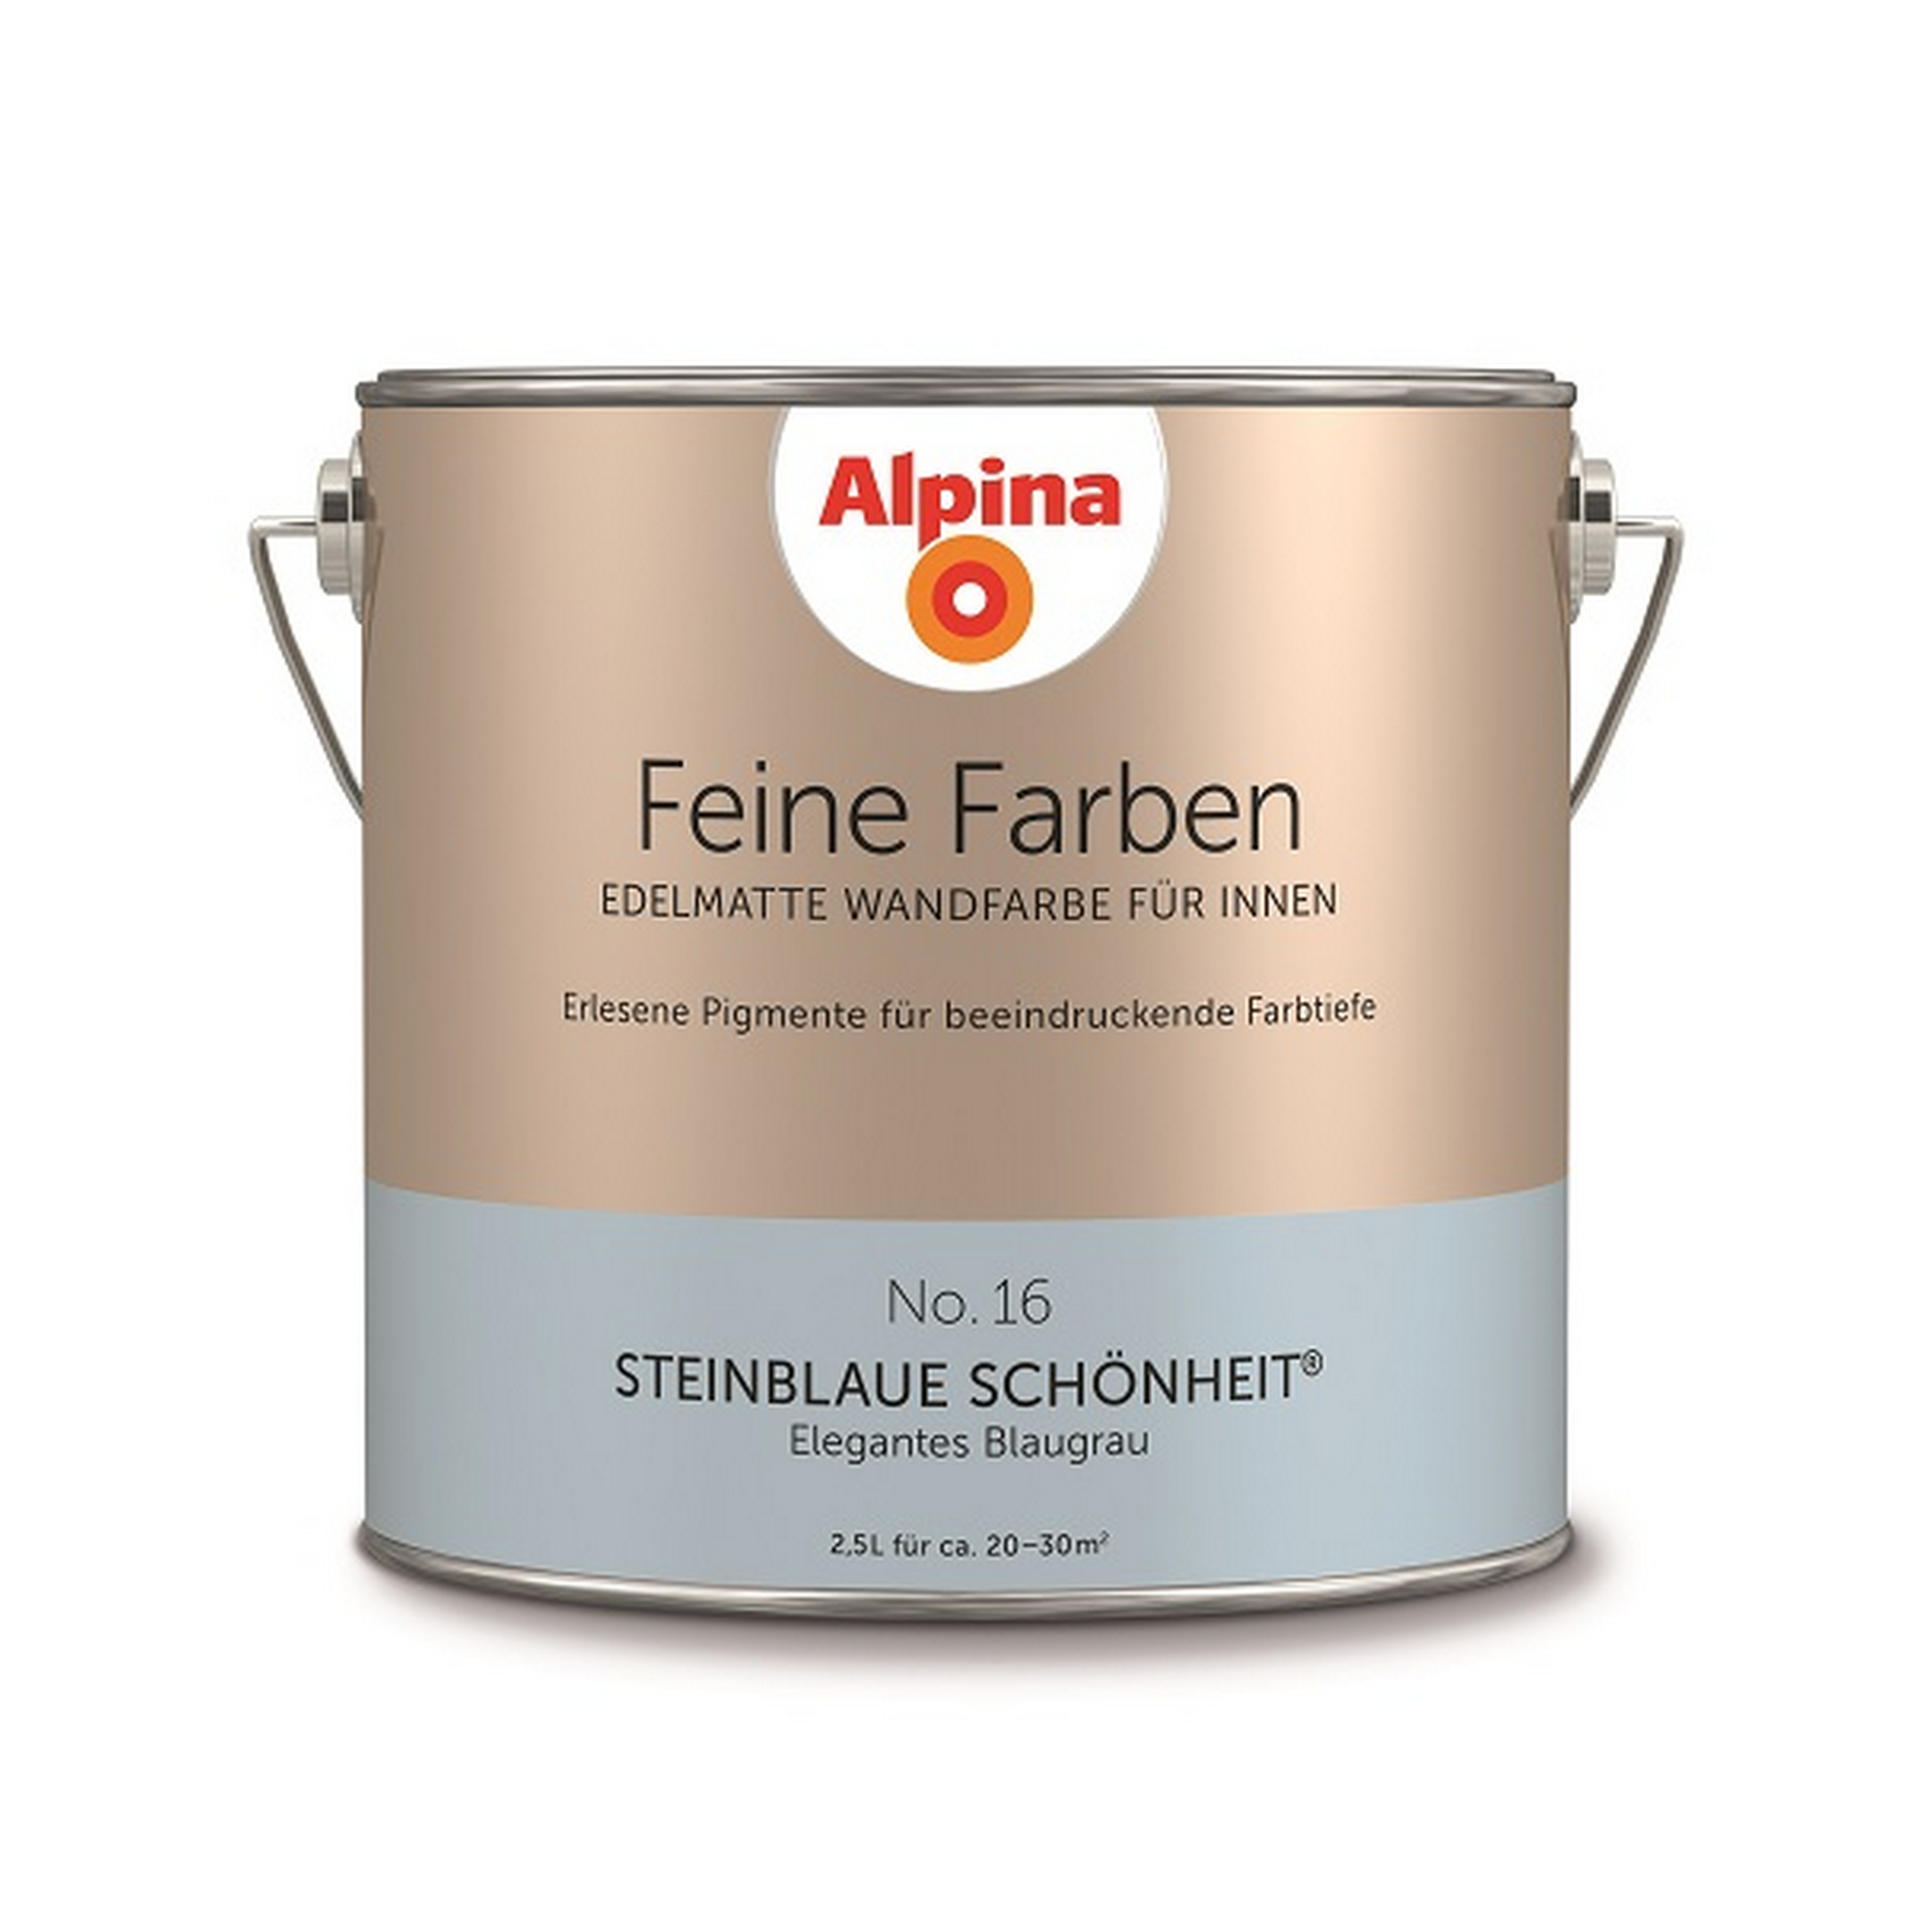 Feine Farben 'Steinblaue Schönheit' blaugrau matt 2,5 l + product picture